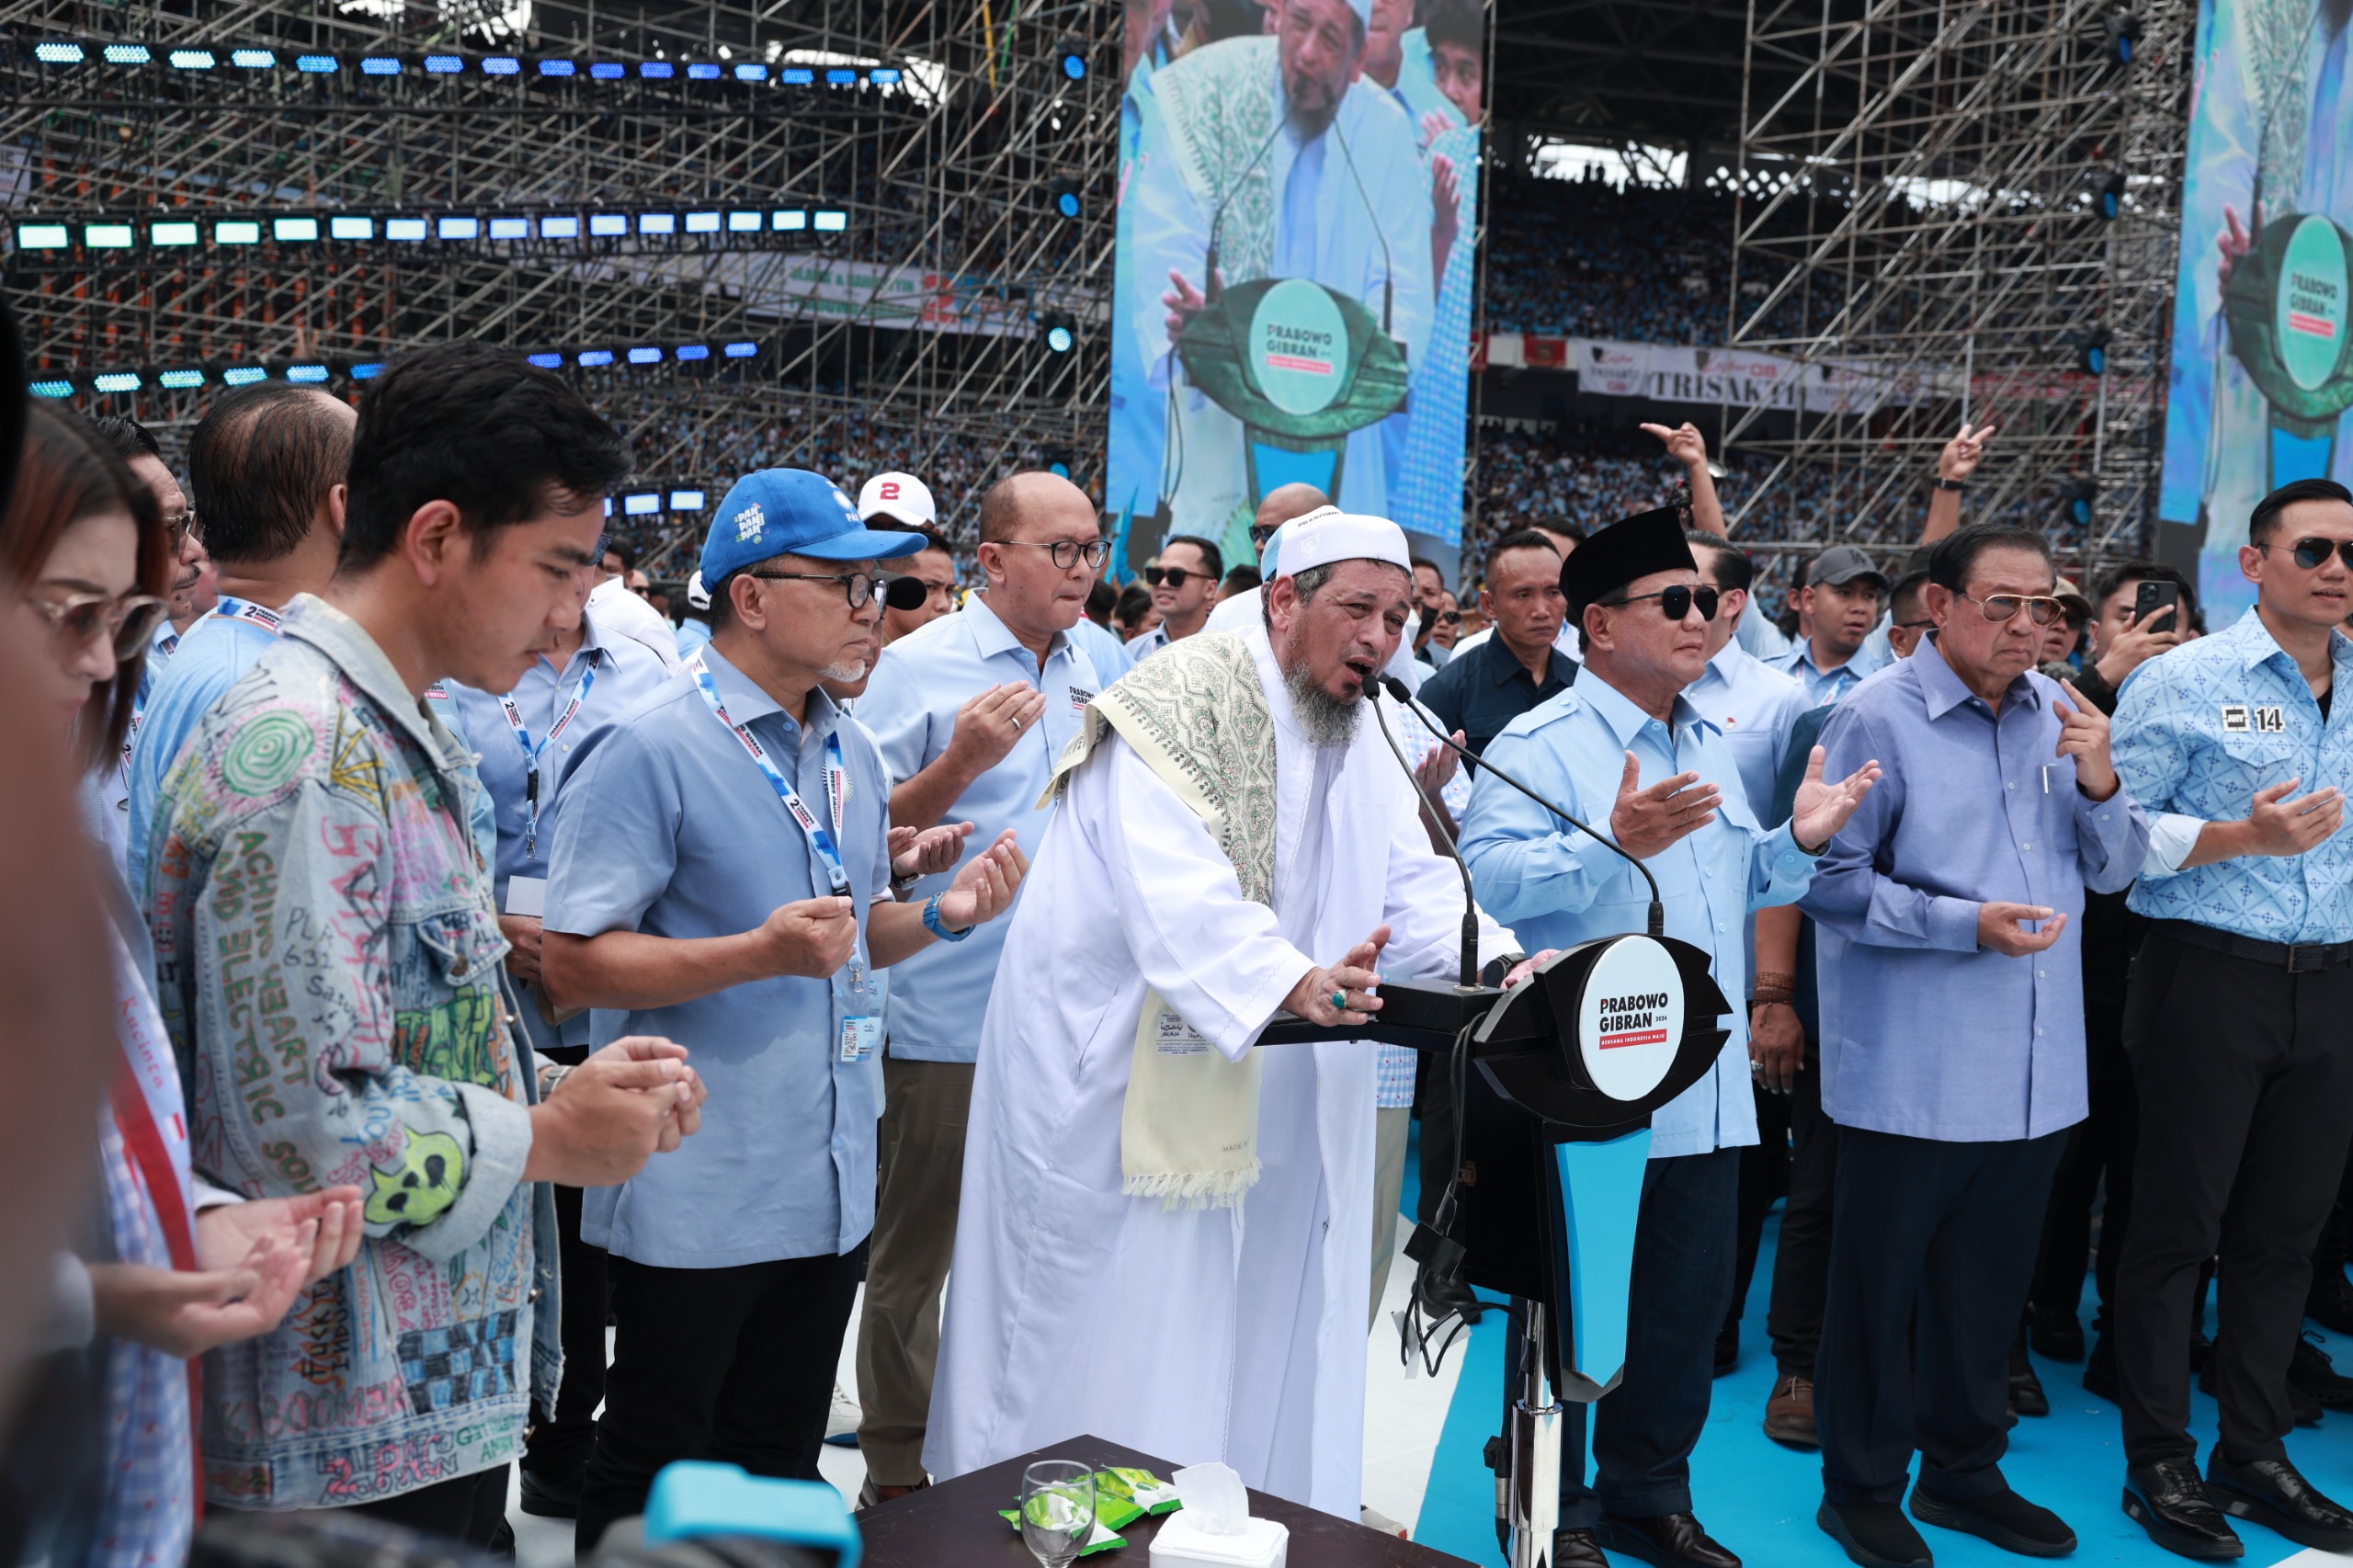 Di Hadapan 600 Ribu Massa yang Memadati GBK, Habib Ali Kwitang Doakan Prabowo-Gibran Jadi Pemimpin Indonesia yang Diberkahi Allah